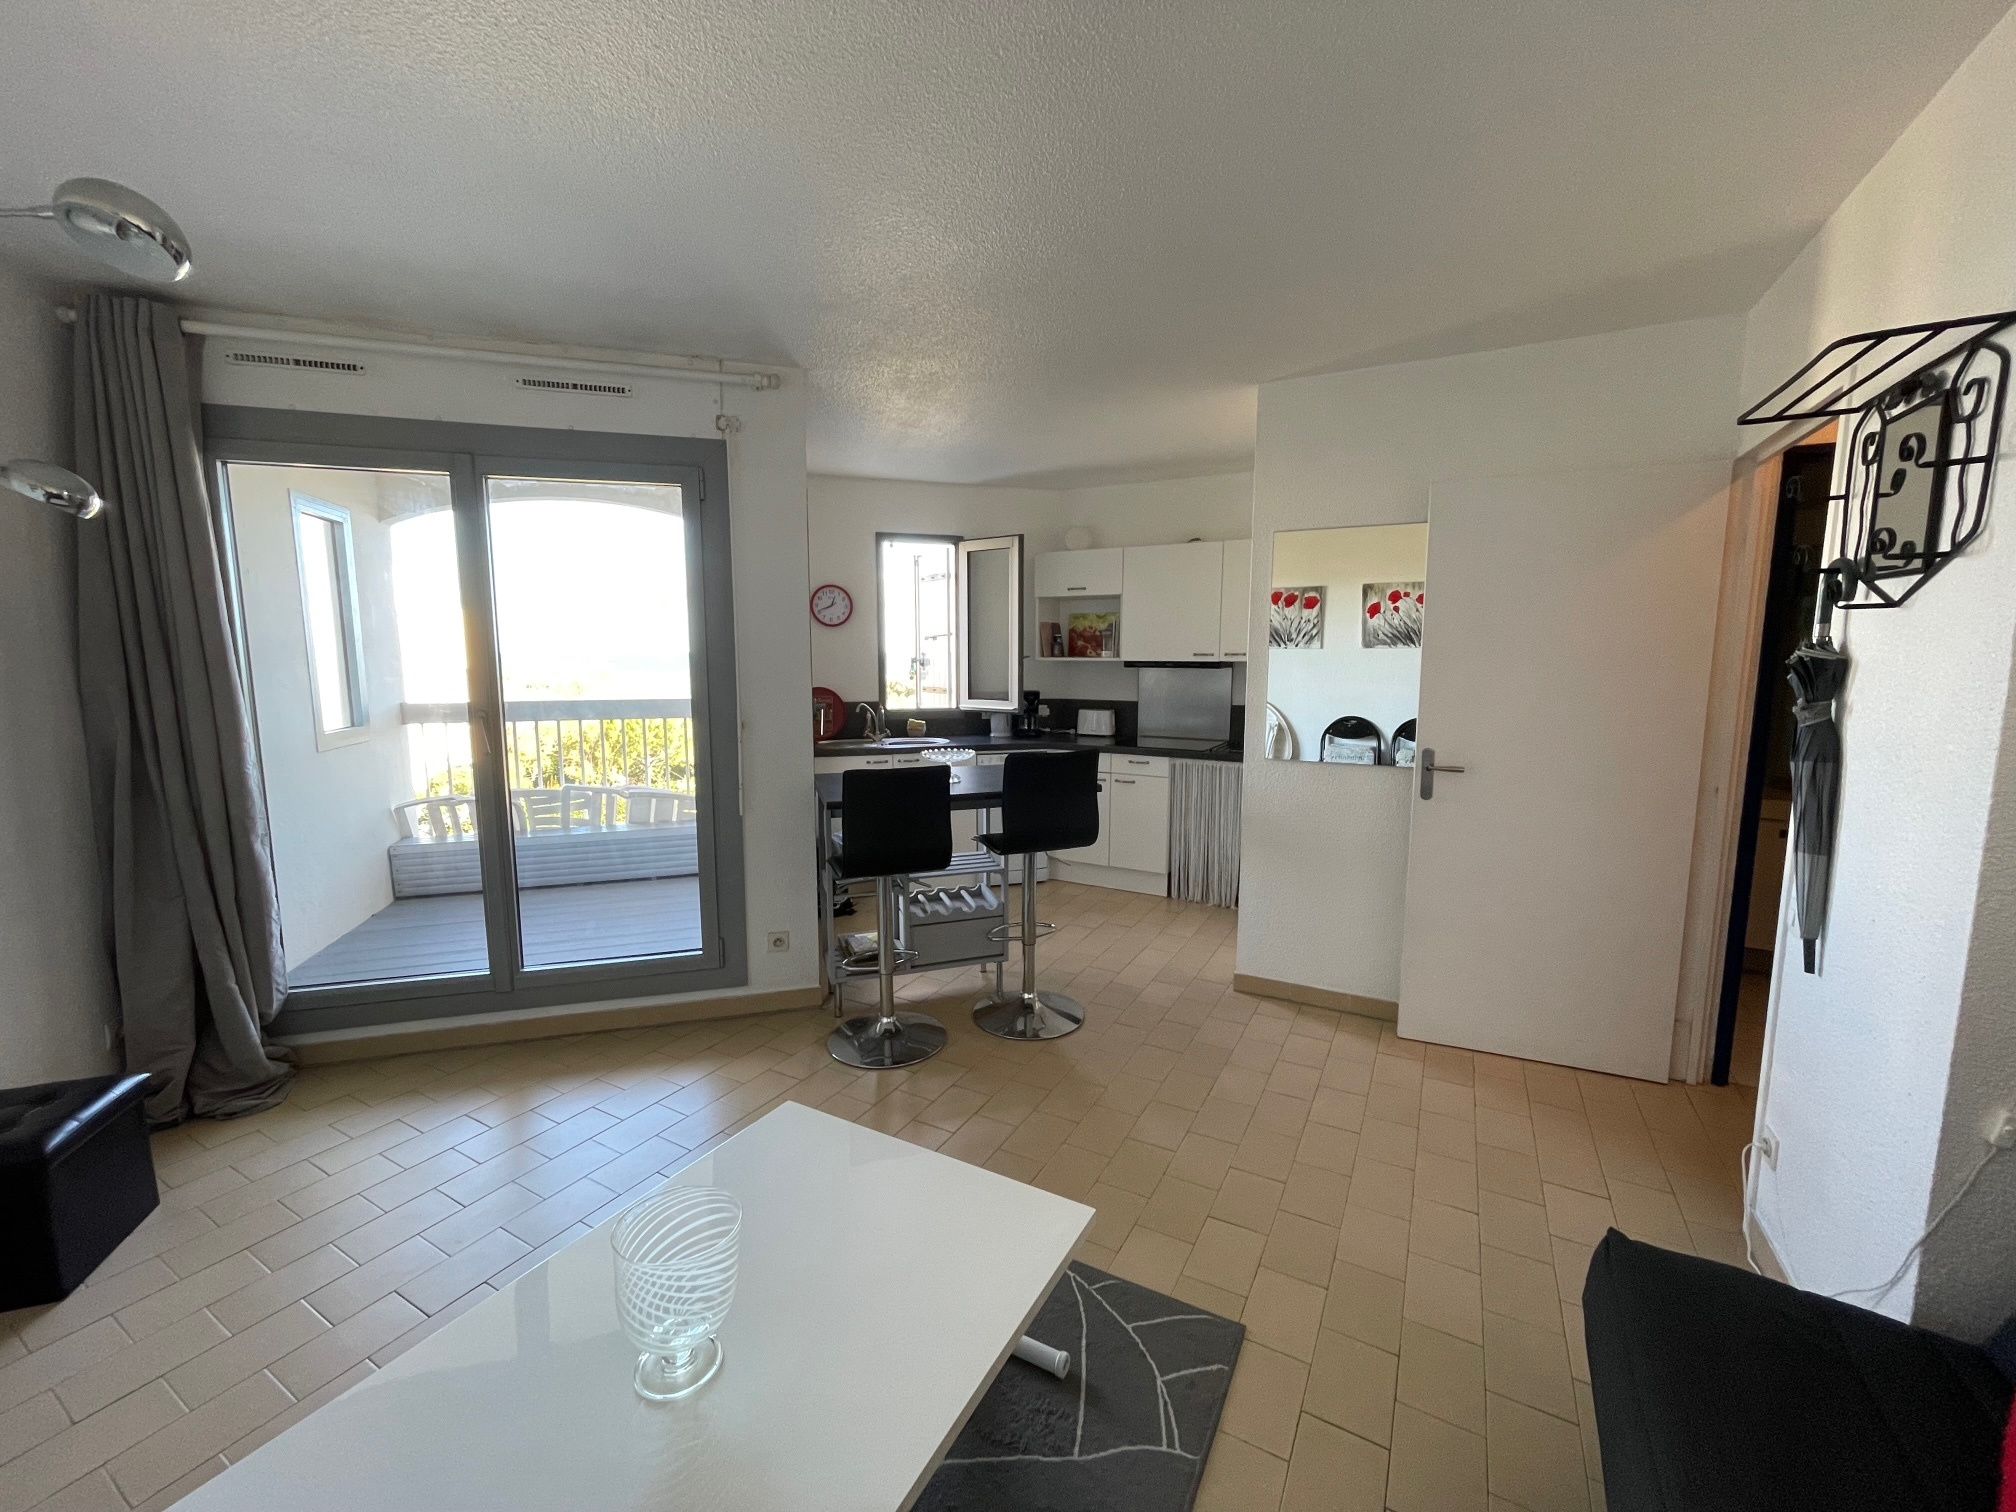 À vendre appartement de 35m2 à st cyprien plage (66750) - Photo 10'